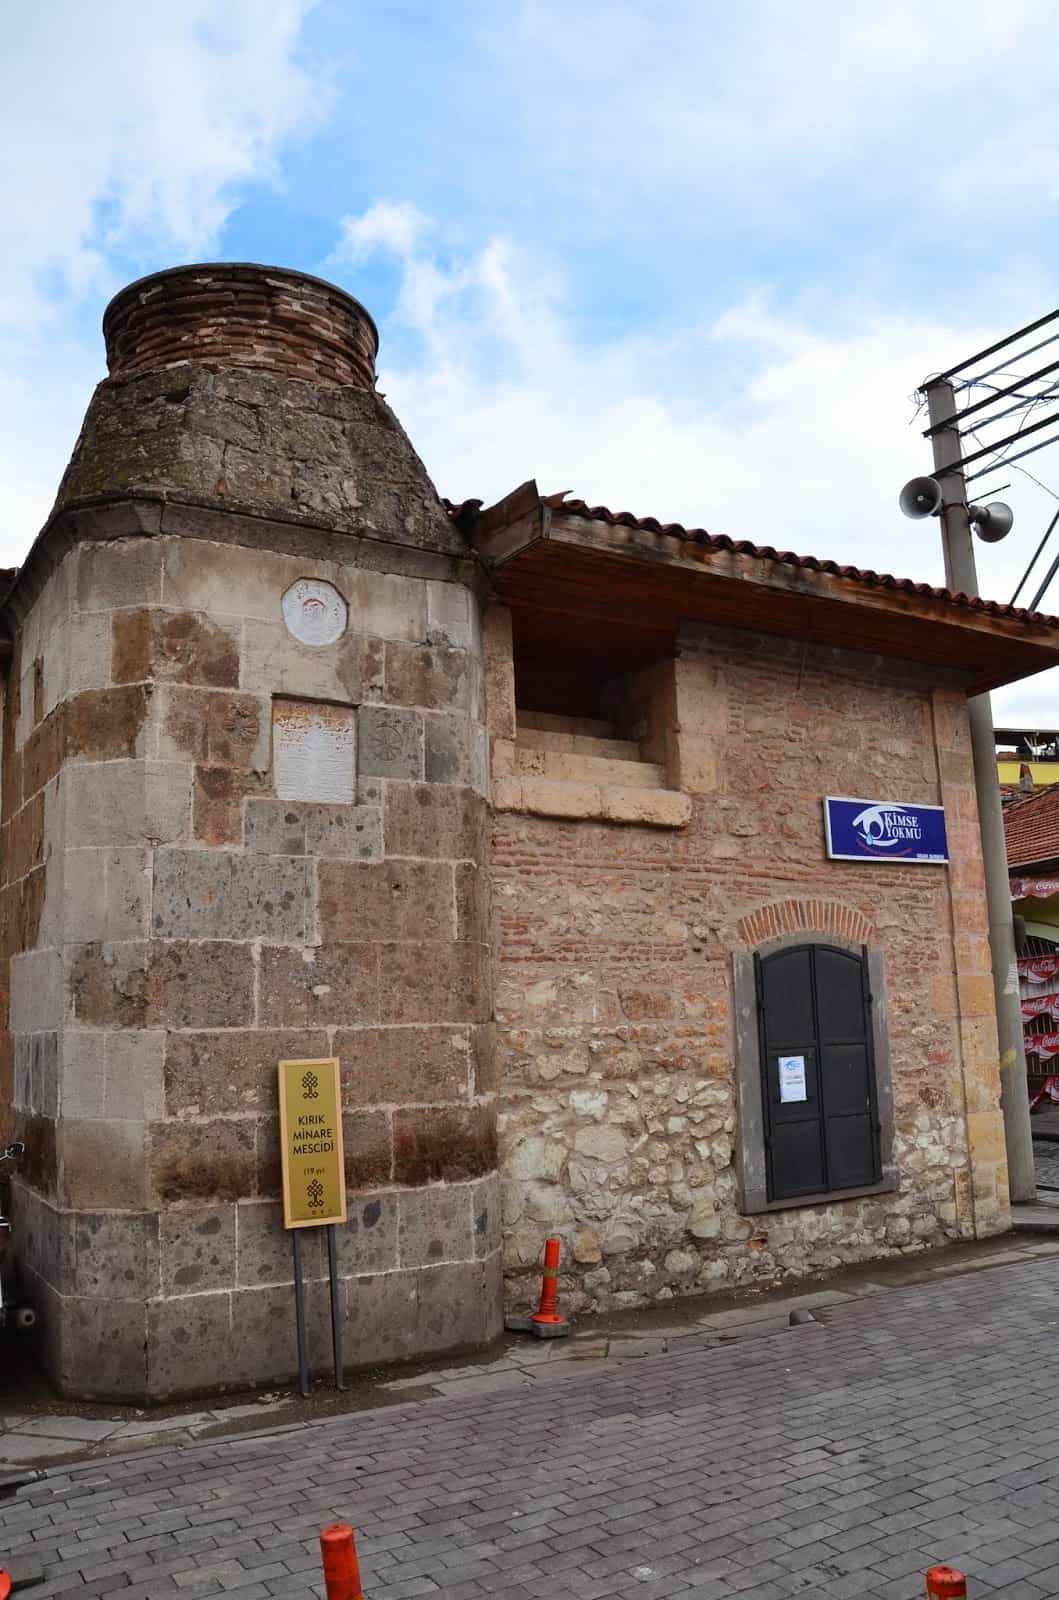 Broken Minaret Mosque in Uşak, Turkey